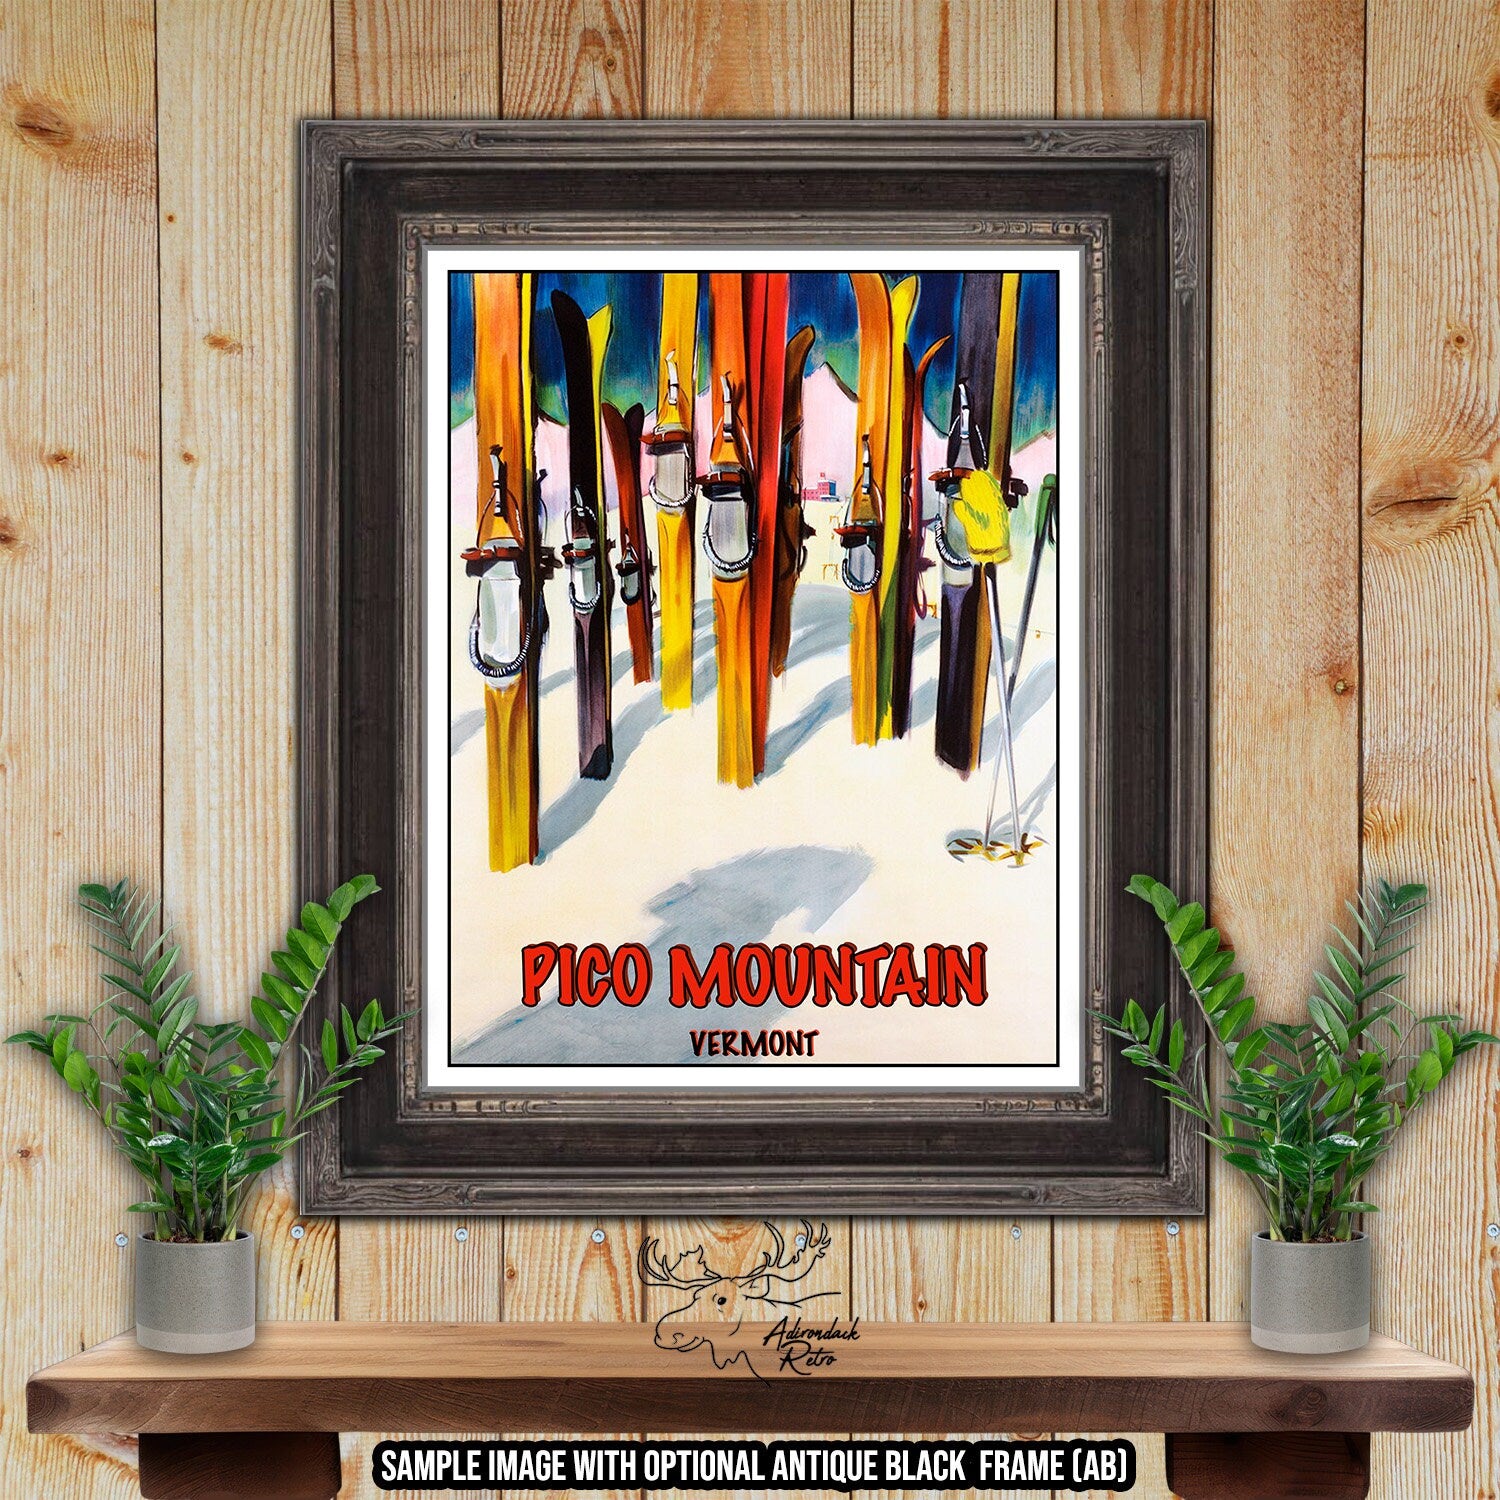 Pico Mountain Vermont Retro Ski Resort Poster at Adirondack Retro